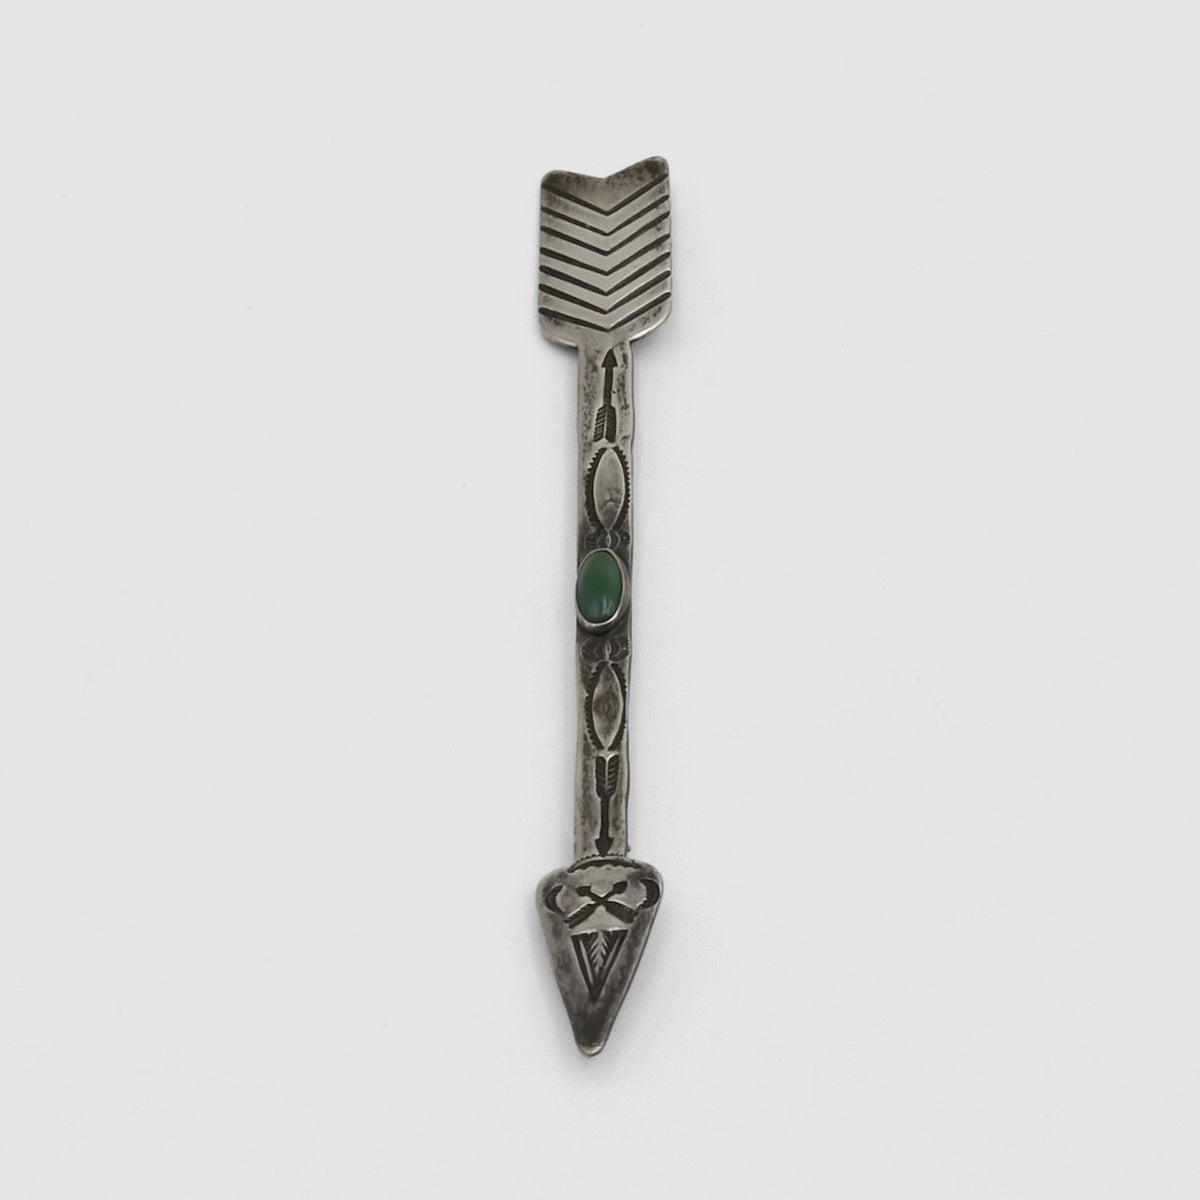 Vintage Jewelry Arrow Brooch Pin